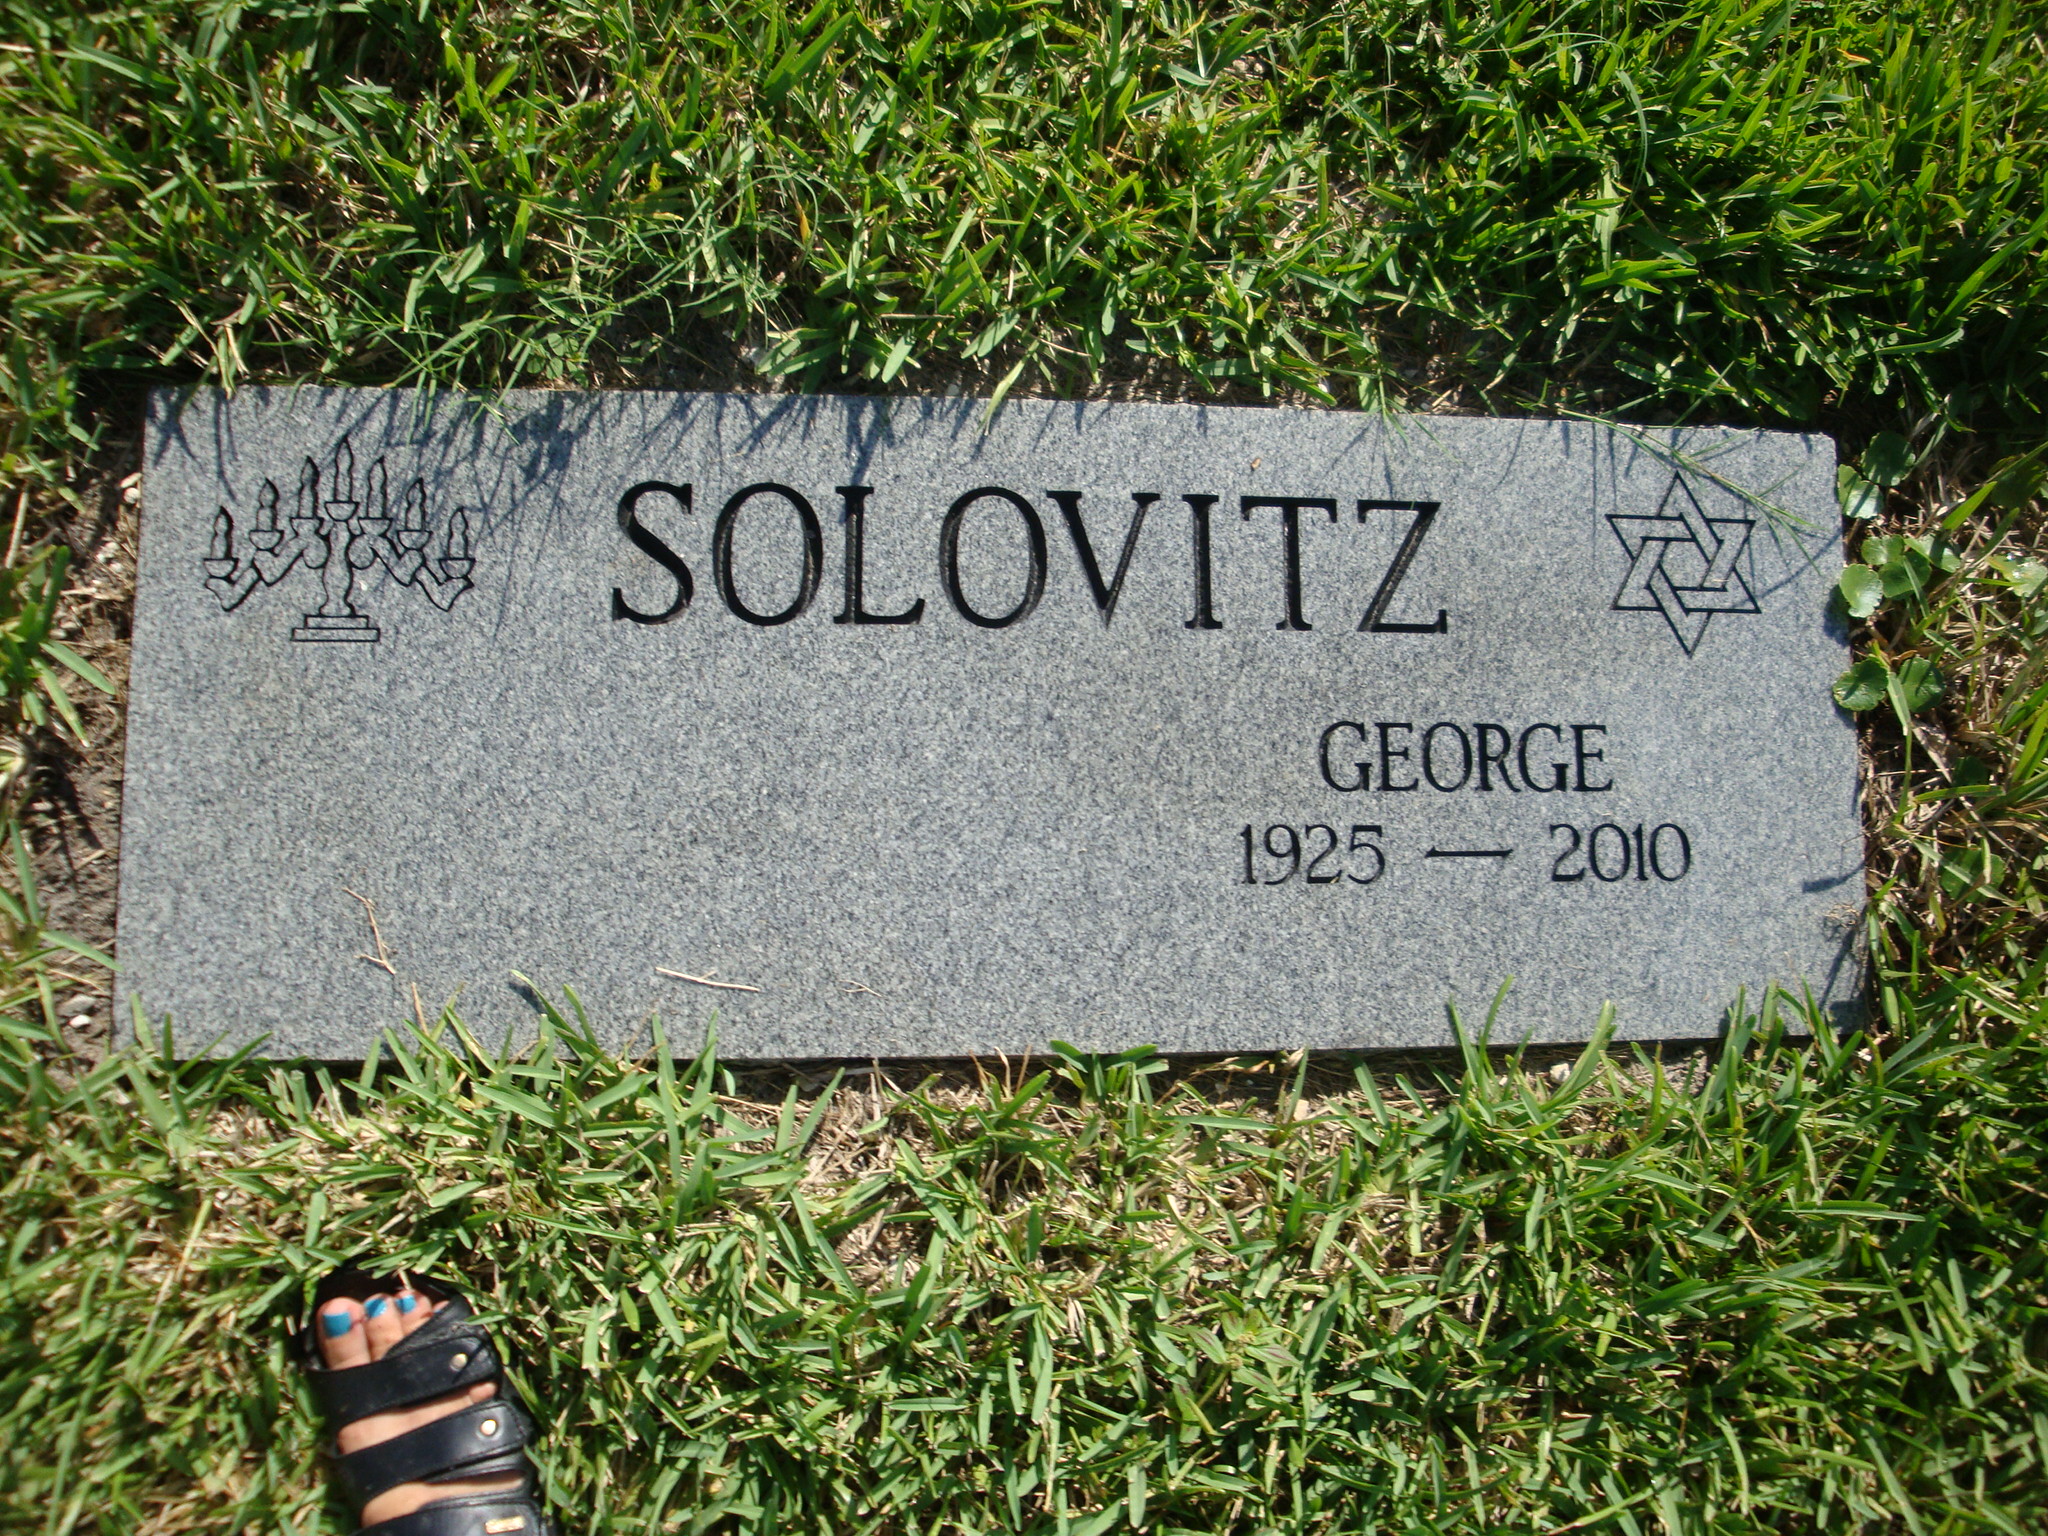 George Solovitz